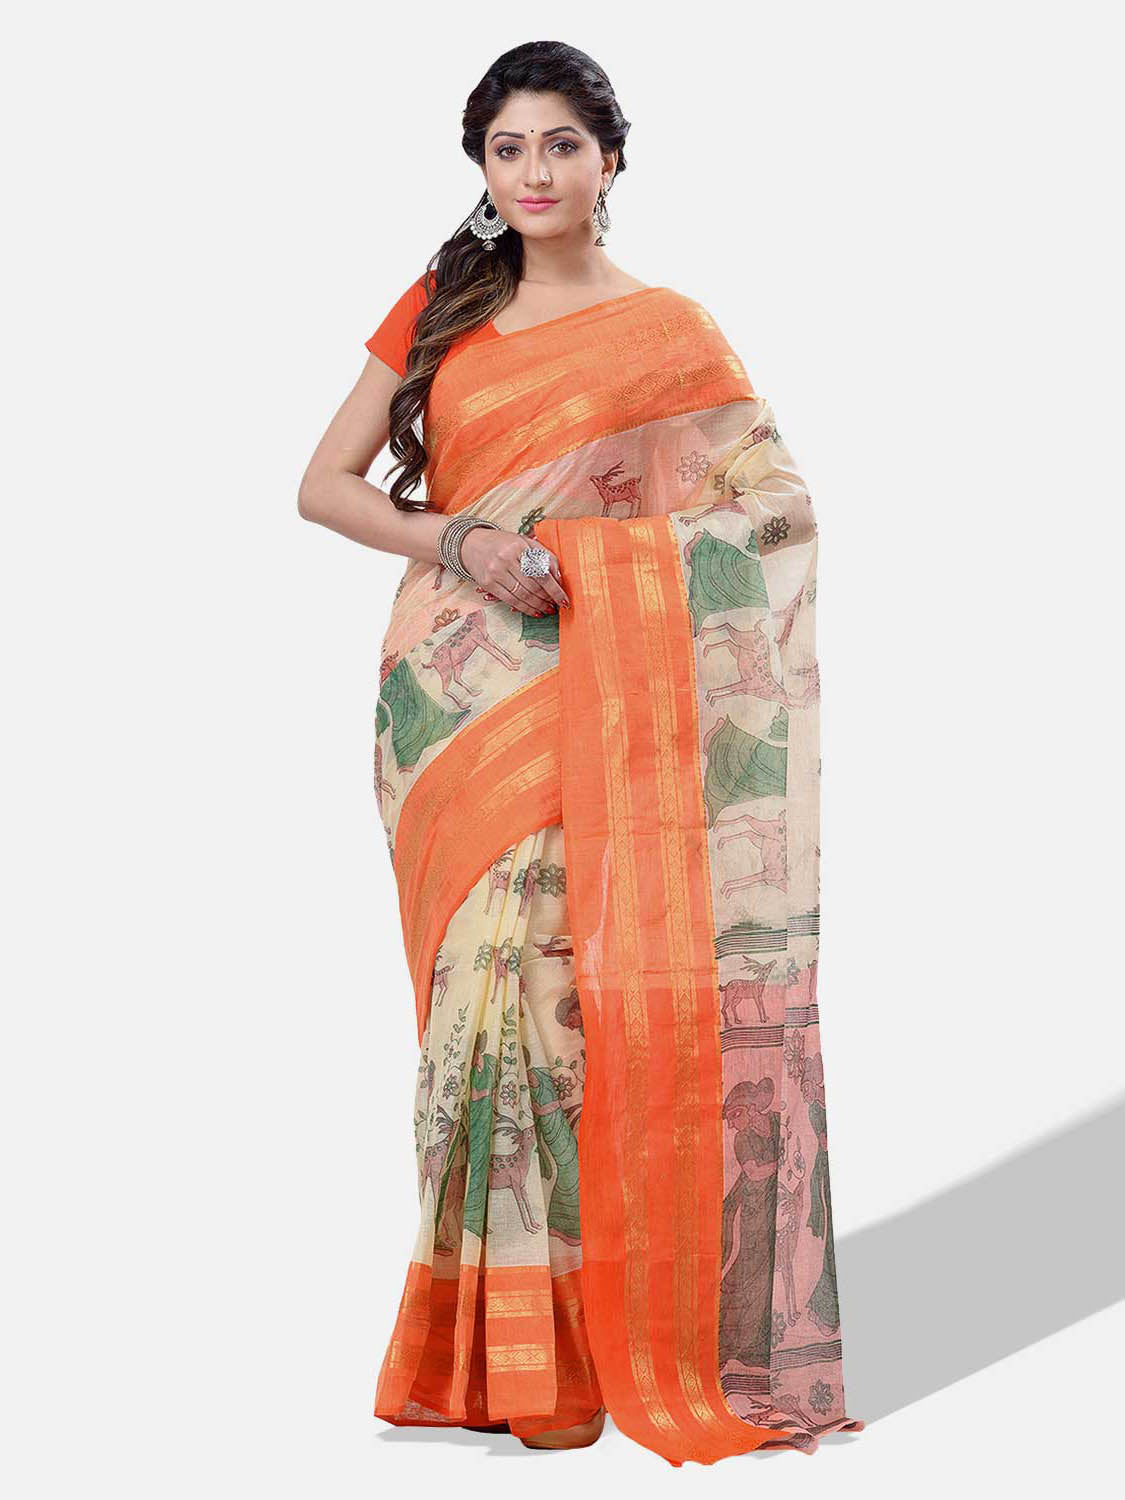 Women's Bengal Printed Orange Cotton Tant Saree - Piyari Fashion